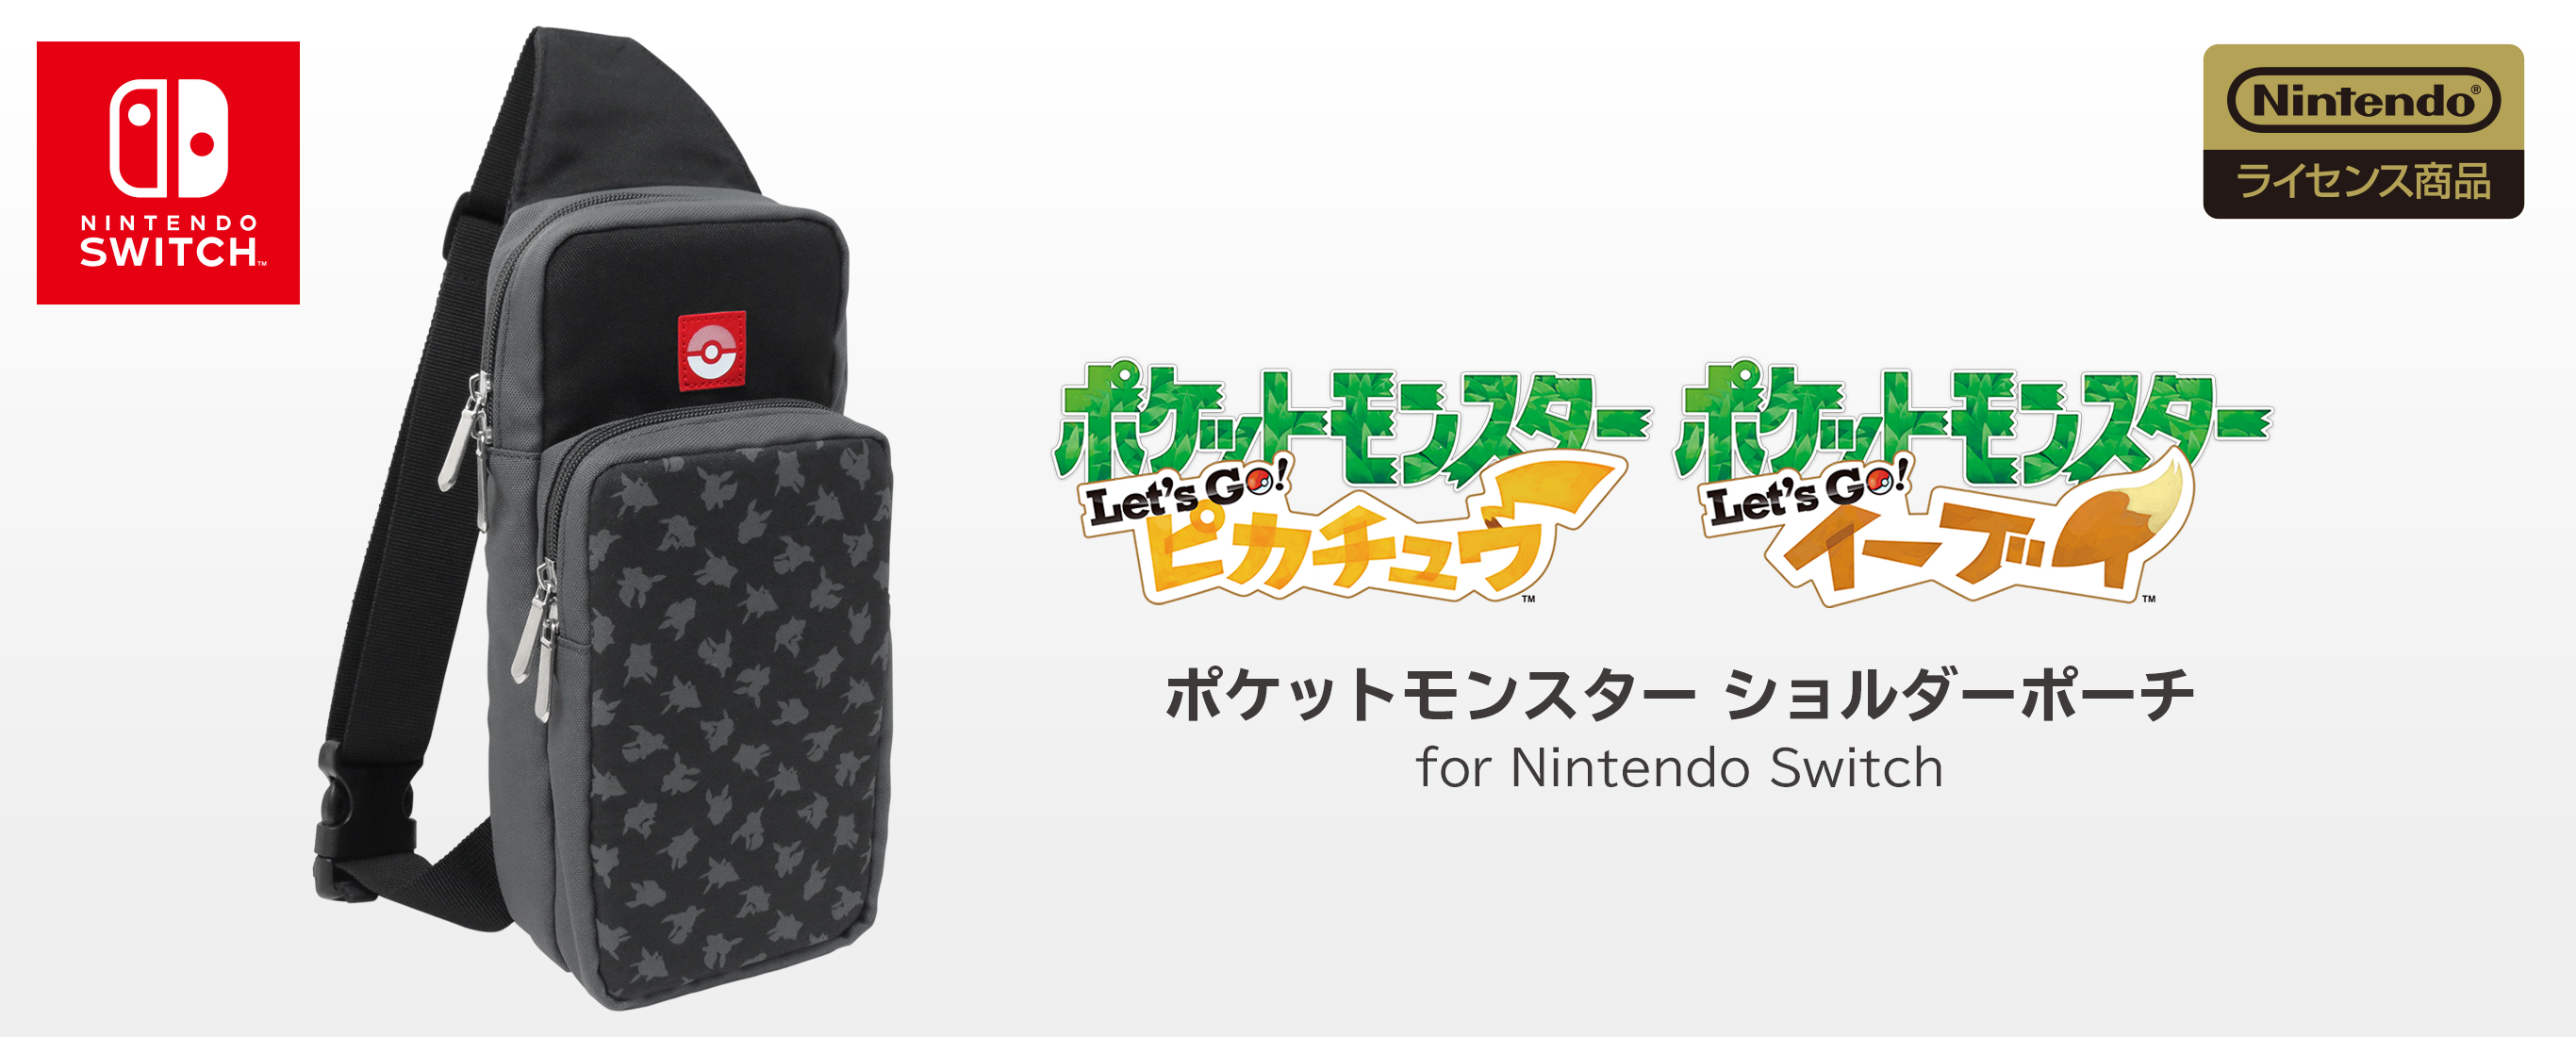 株式会社 Hori ポケットモンスター ショルダーポーチ For Nintendo Switch Let S Go ピカチュウ Let S Go イーブイ